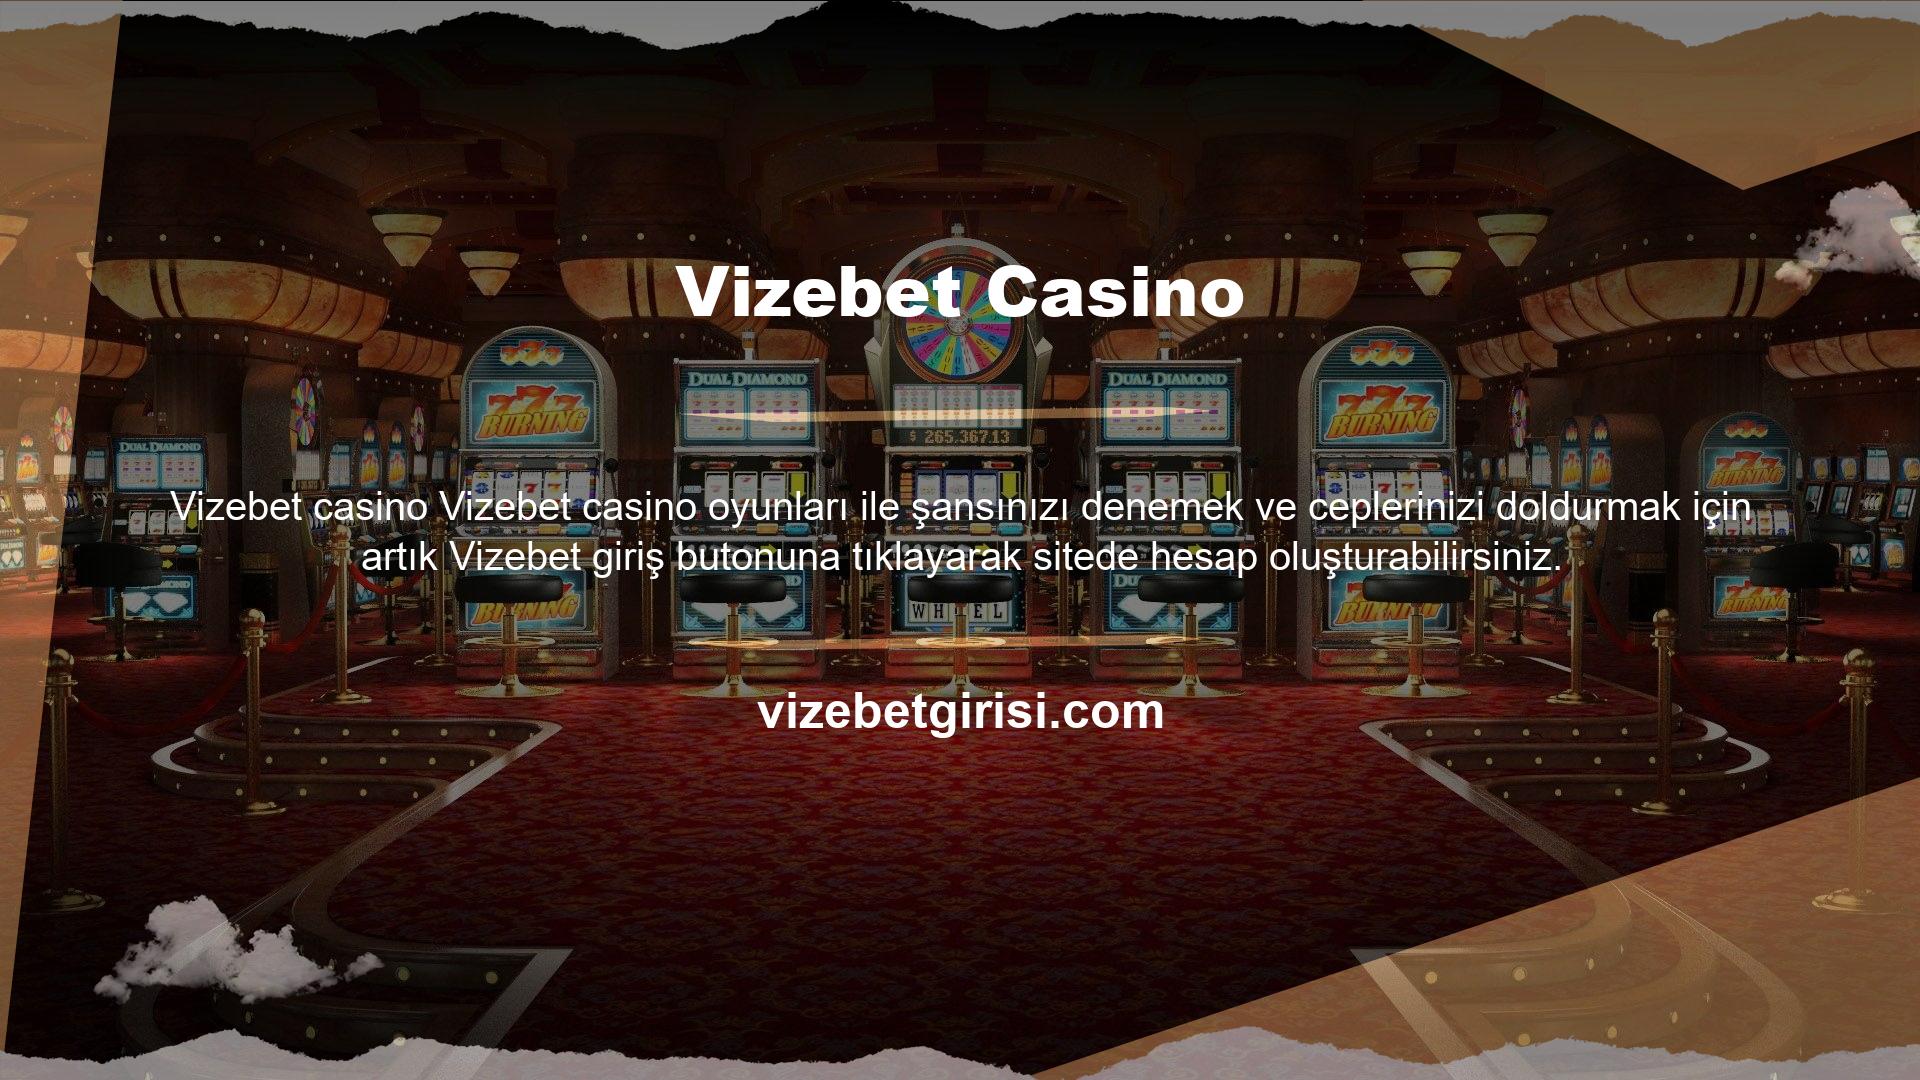 Herkese iyi şanslar! Bu nedenle Vizebet ve benzeri çevrimiçi casino sitelerinin blok zincirine erişimi vardır